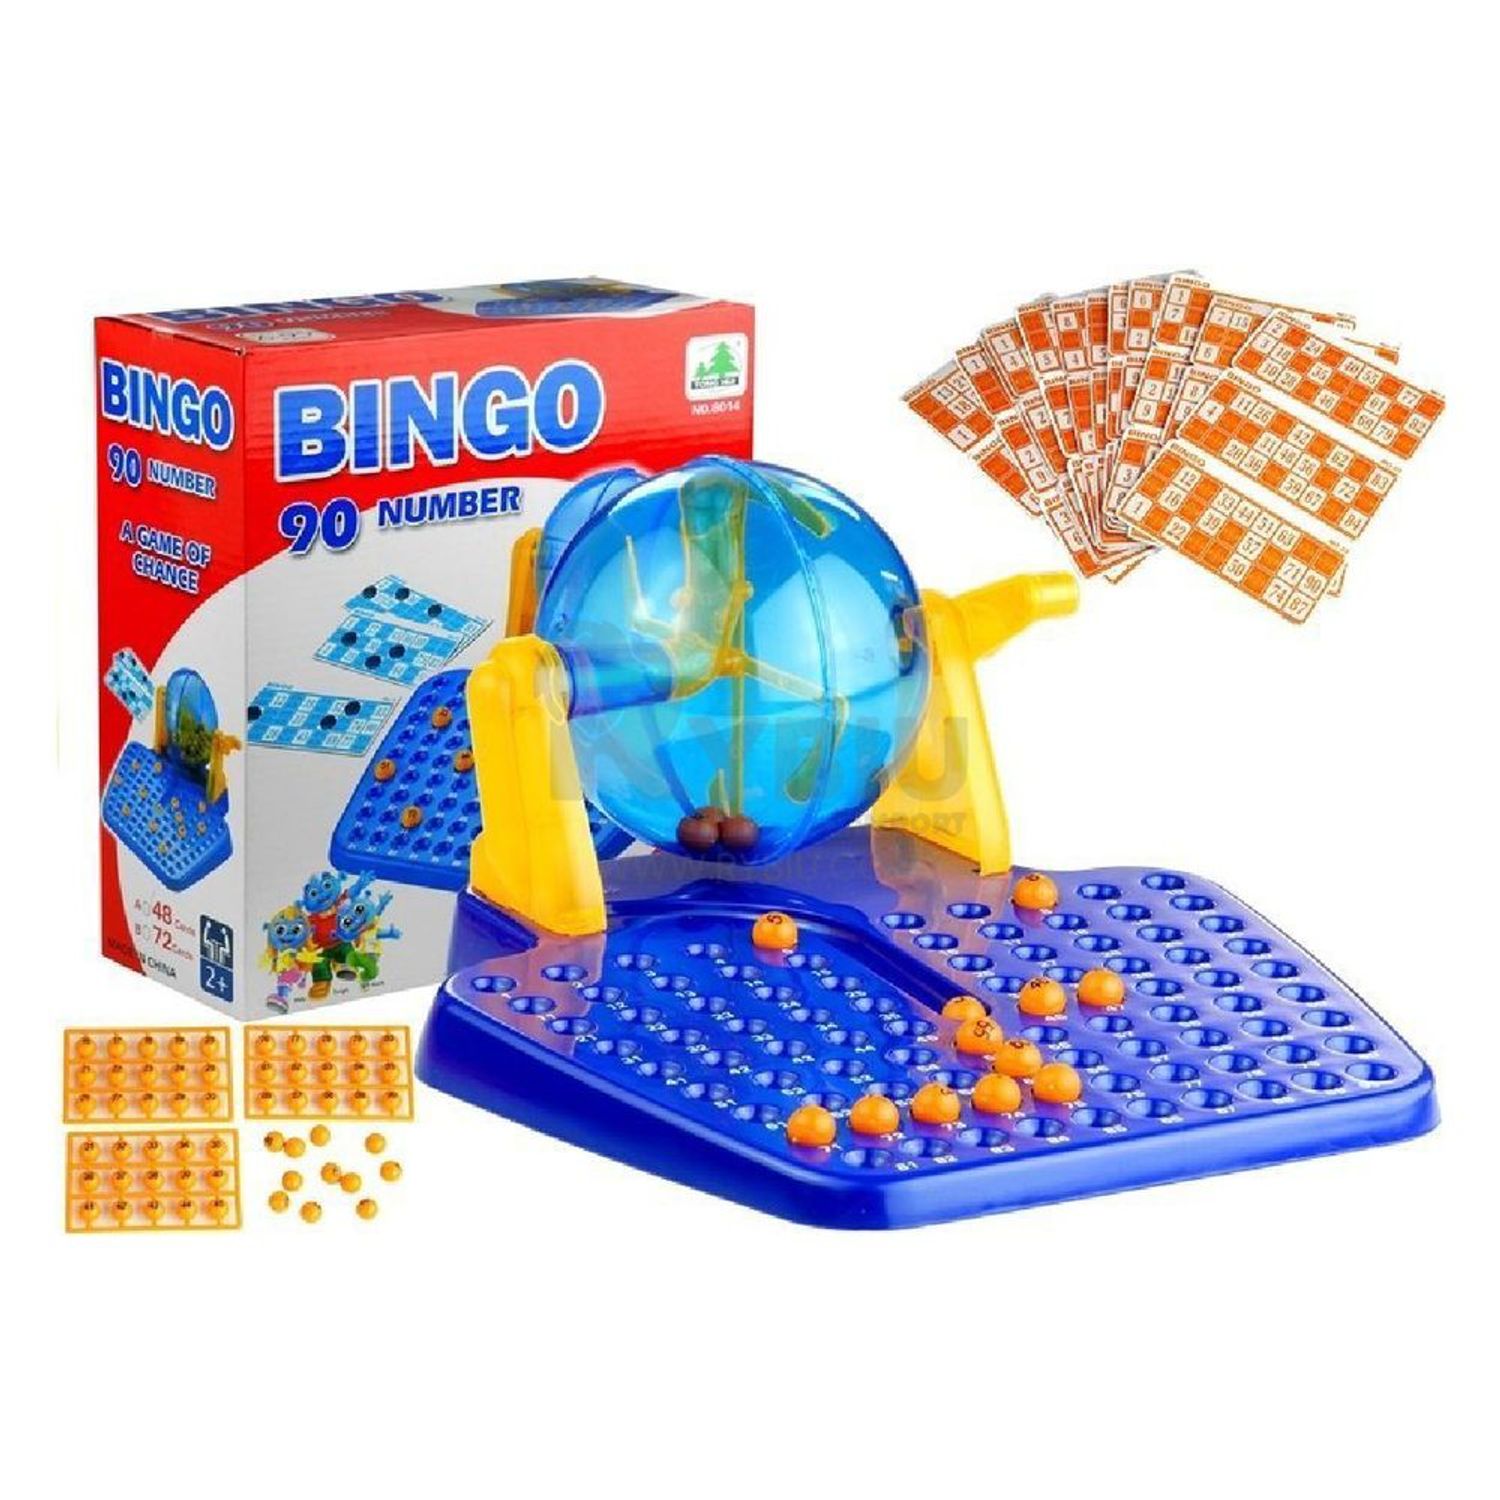 Bingo Lotto Rojo Infantil y Niñas - Promart